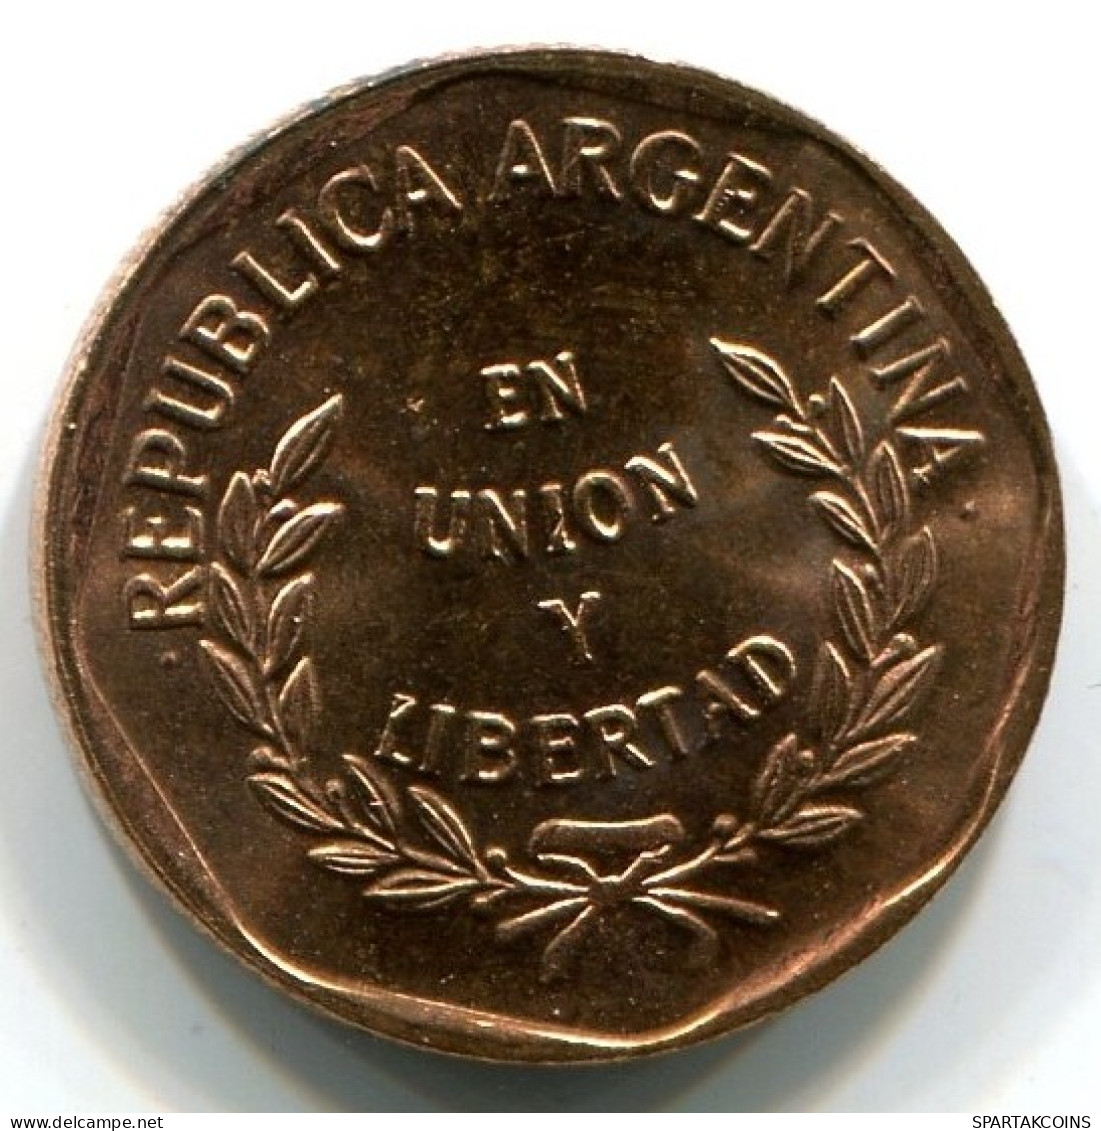 1 CENTAVO 1998 ARGENTINIEN ARGENTINA Münze UNC #W10952.D.A - Argentina